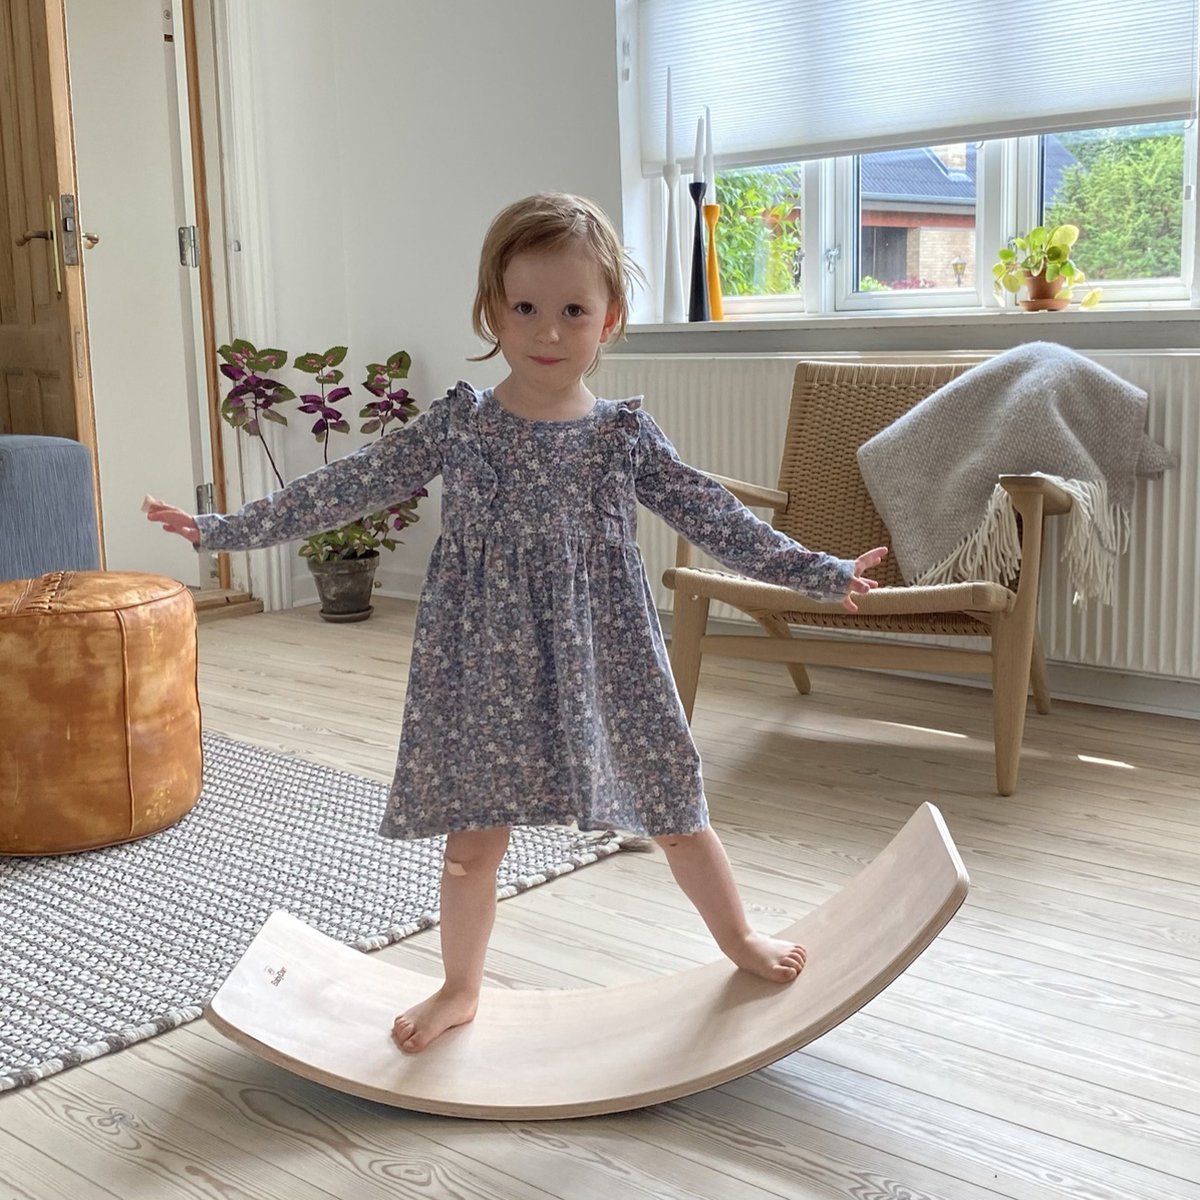 BabyDan Balance Board Beukenhout met vilt 82 cm